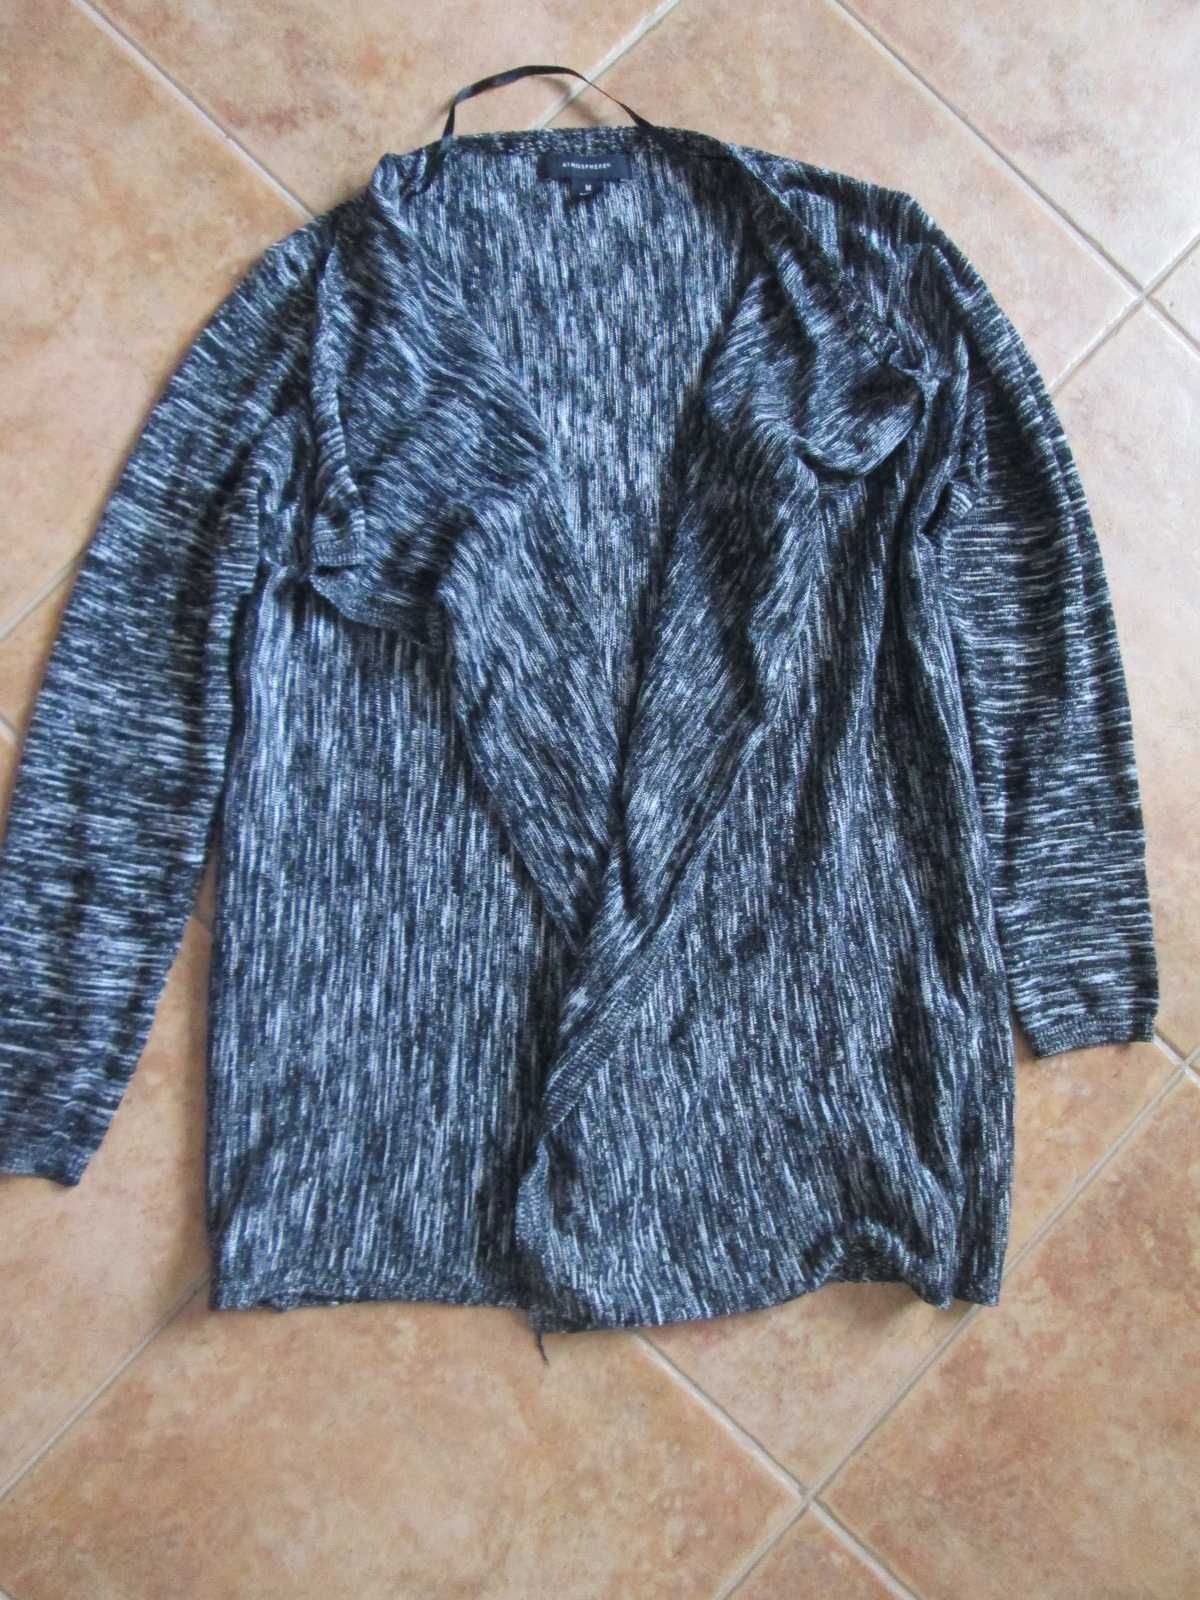 casacos 12 anos ou tamanho S